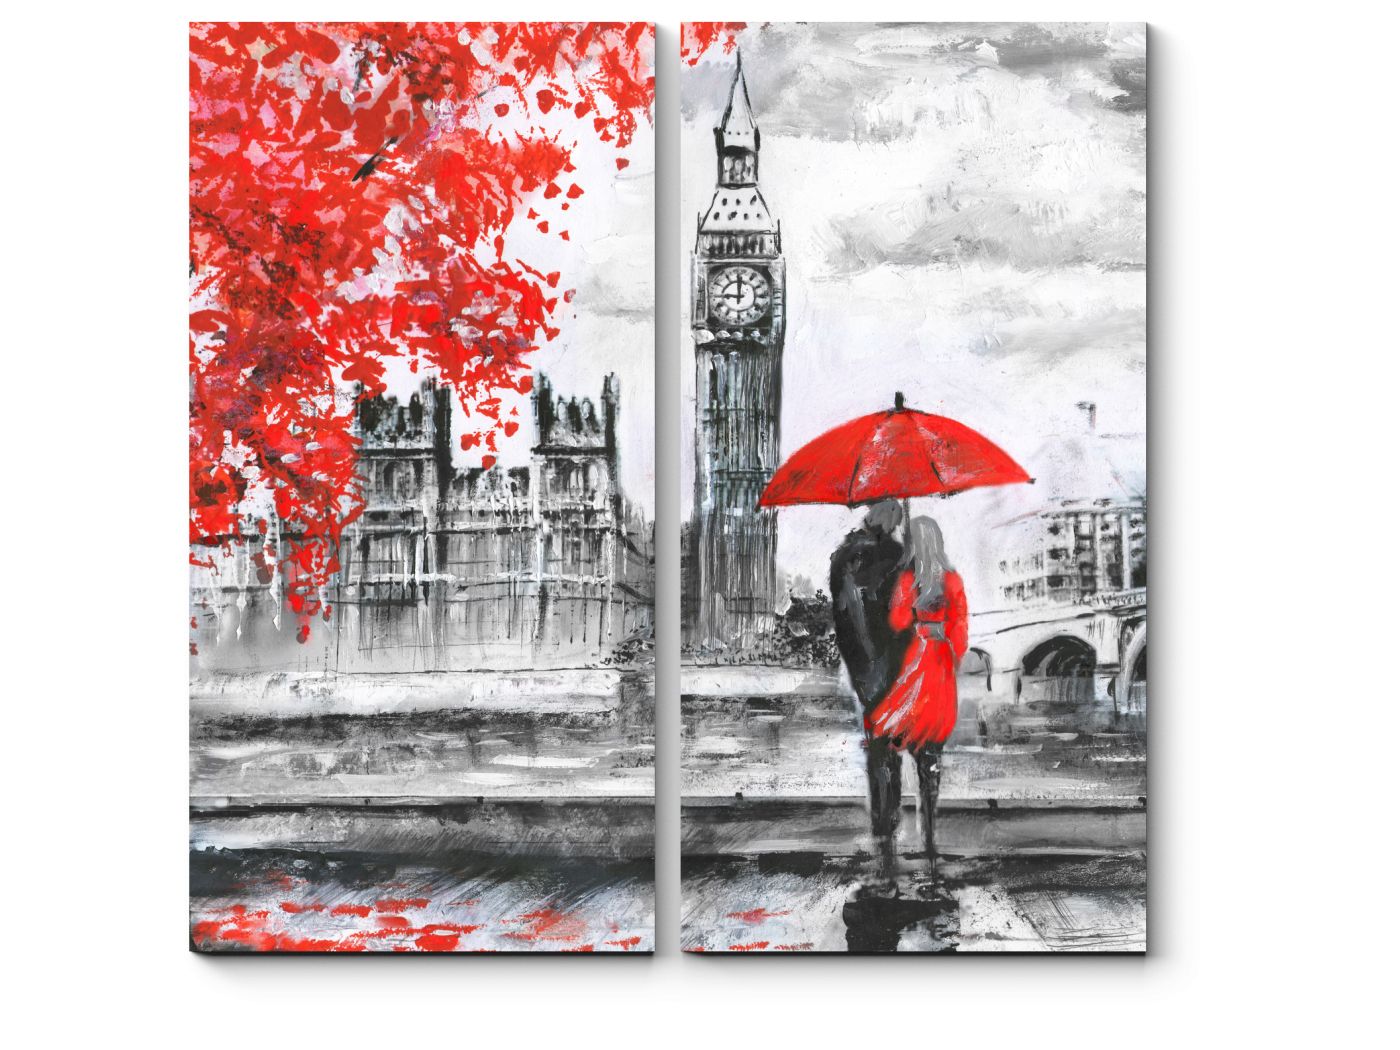 эйфелева башня и красный зонт